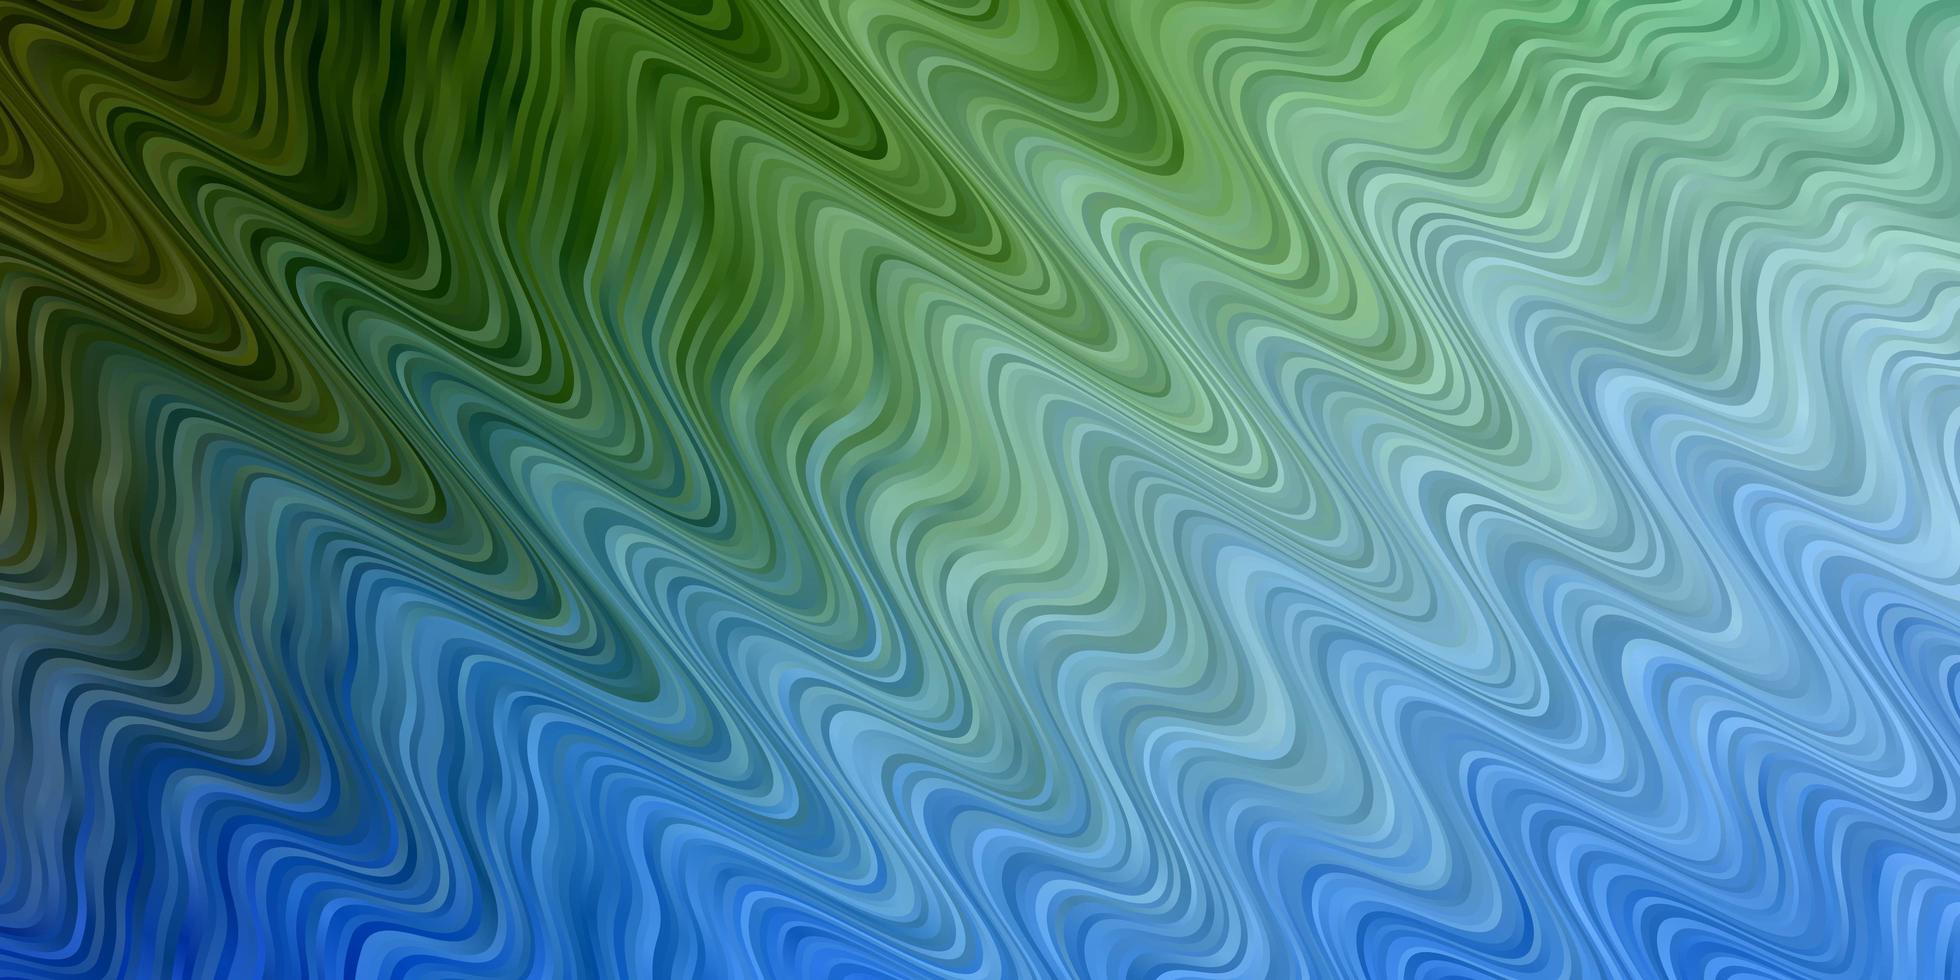 Textura de vector verde azul claro con ilustración colorida de curvas que consiste en un patrón de curvas para anuncios comerciales